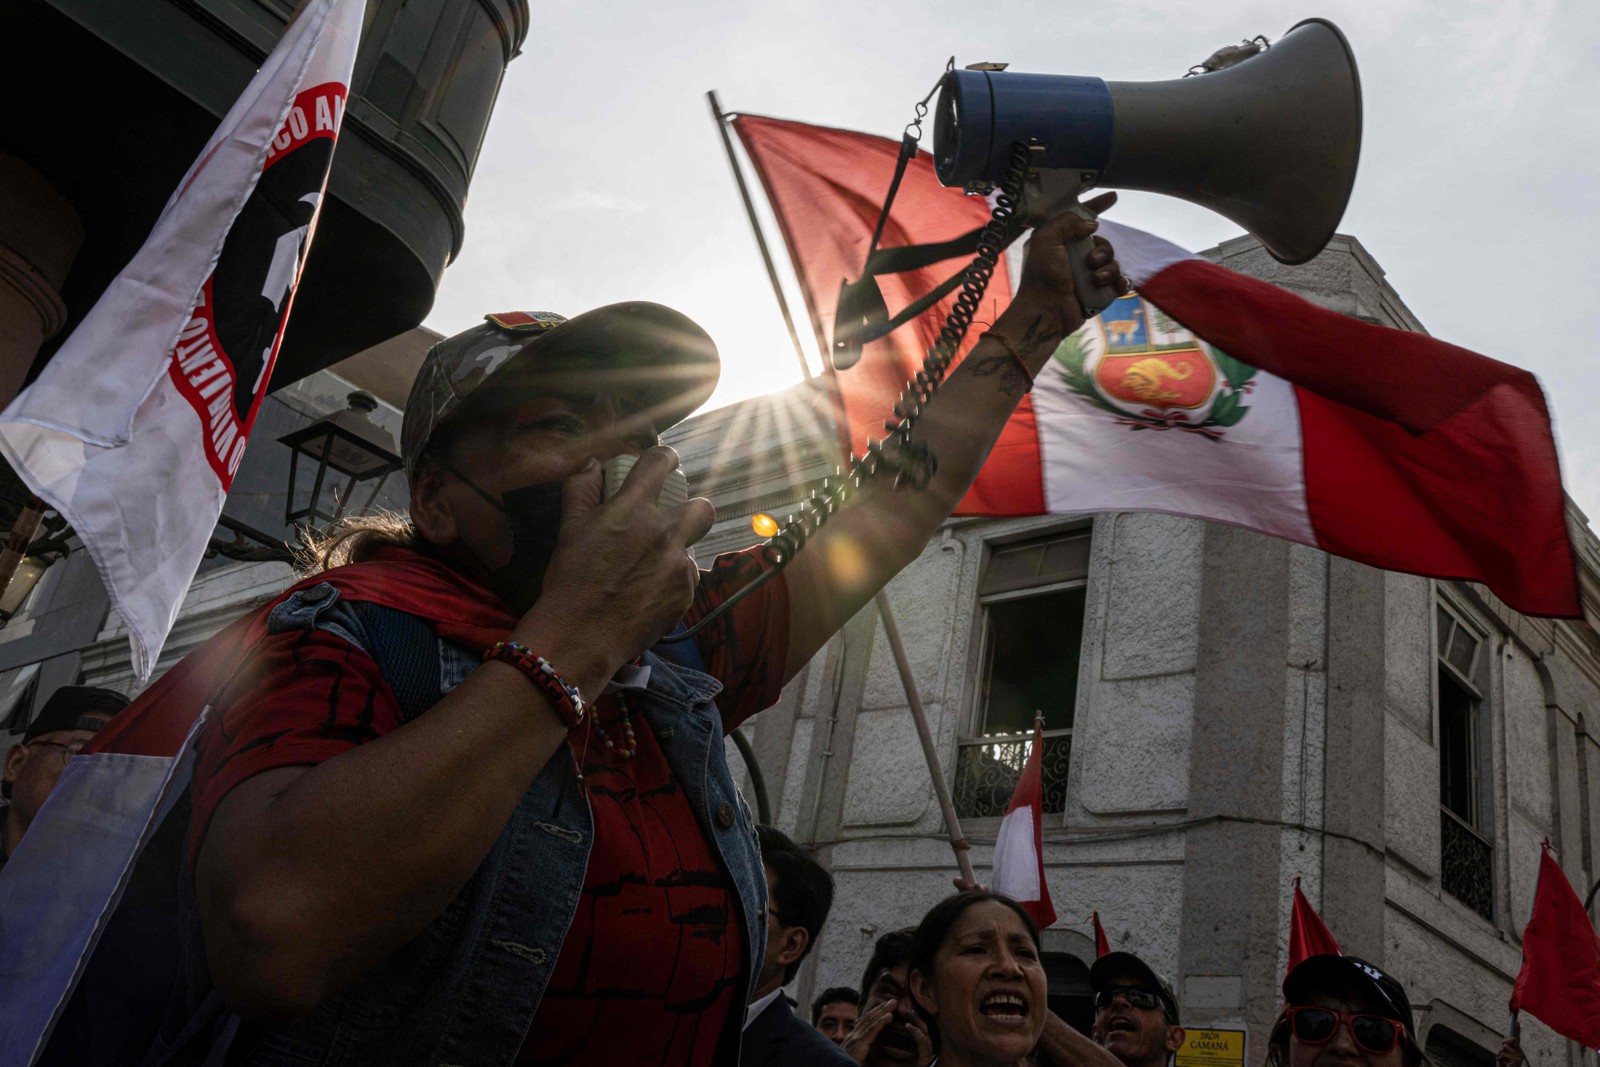 Tensão política e denúncias de corrupção envolvendo o presidente levaram manifestantes às ruas de Lima em novembro.  — Foto: Ernesto BENAVIDES / AFP